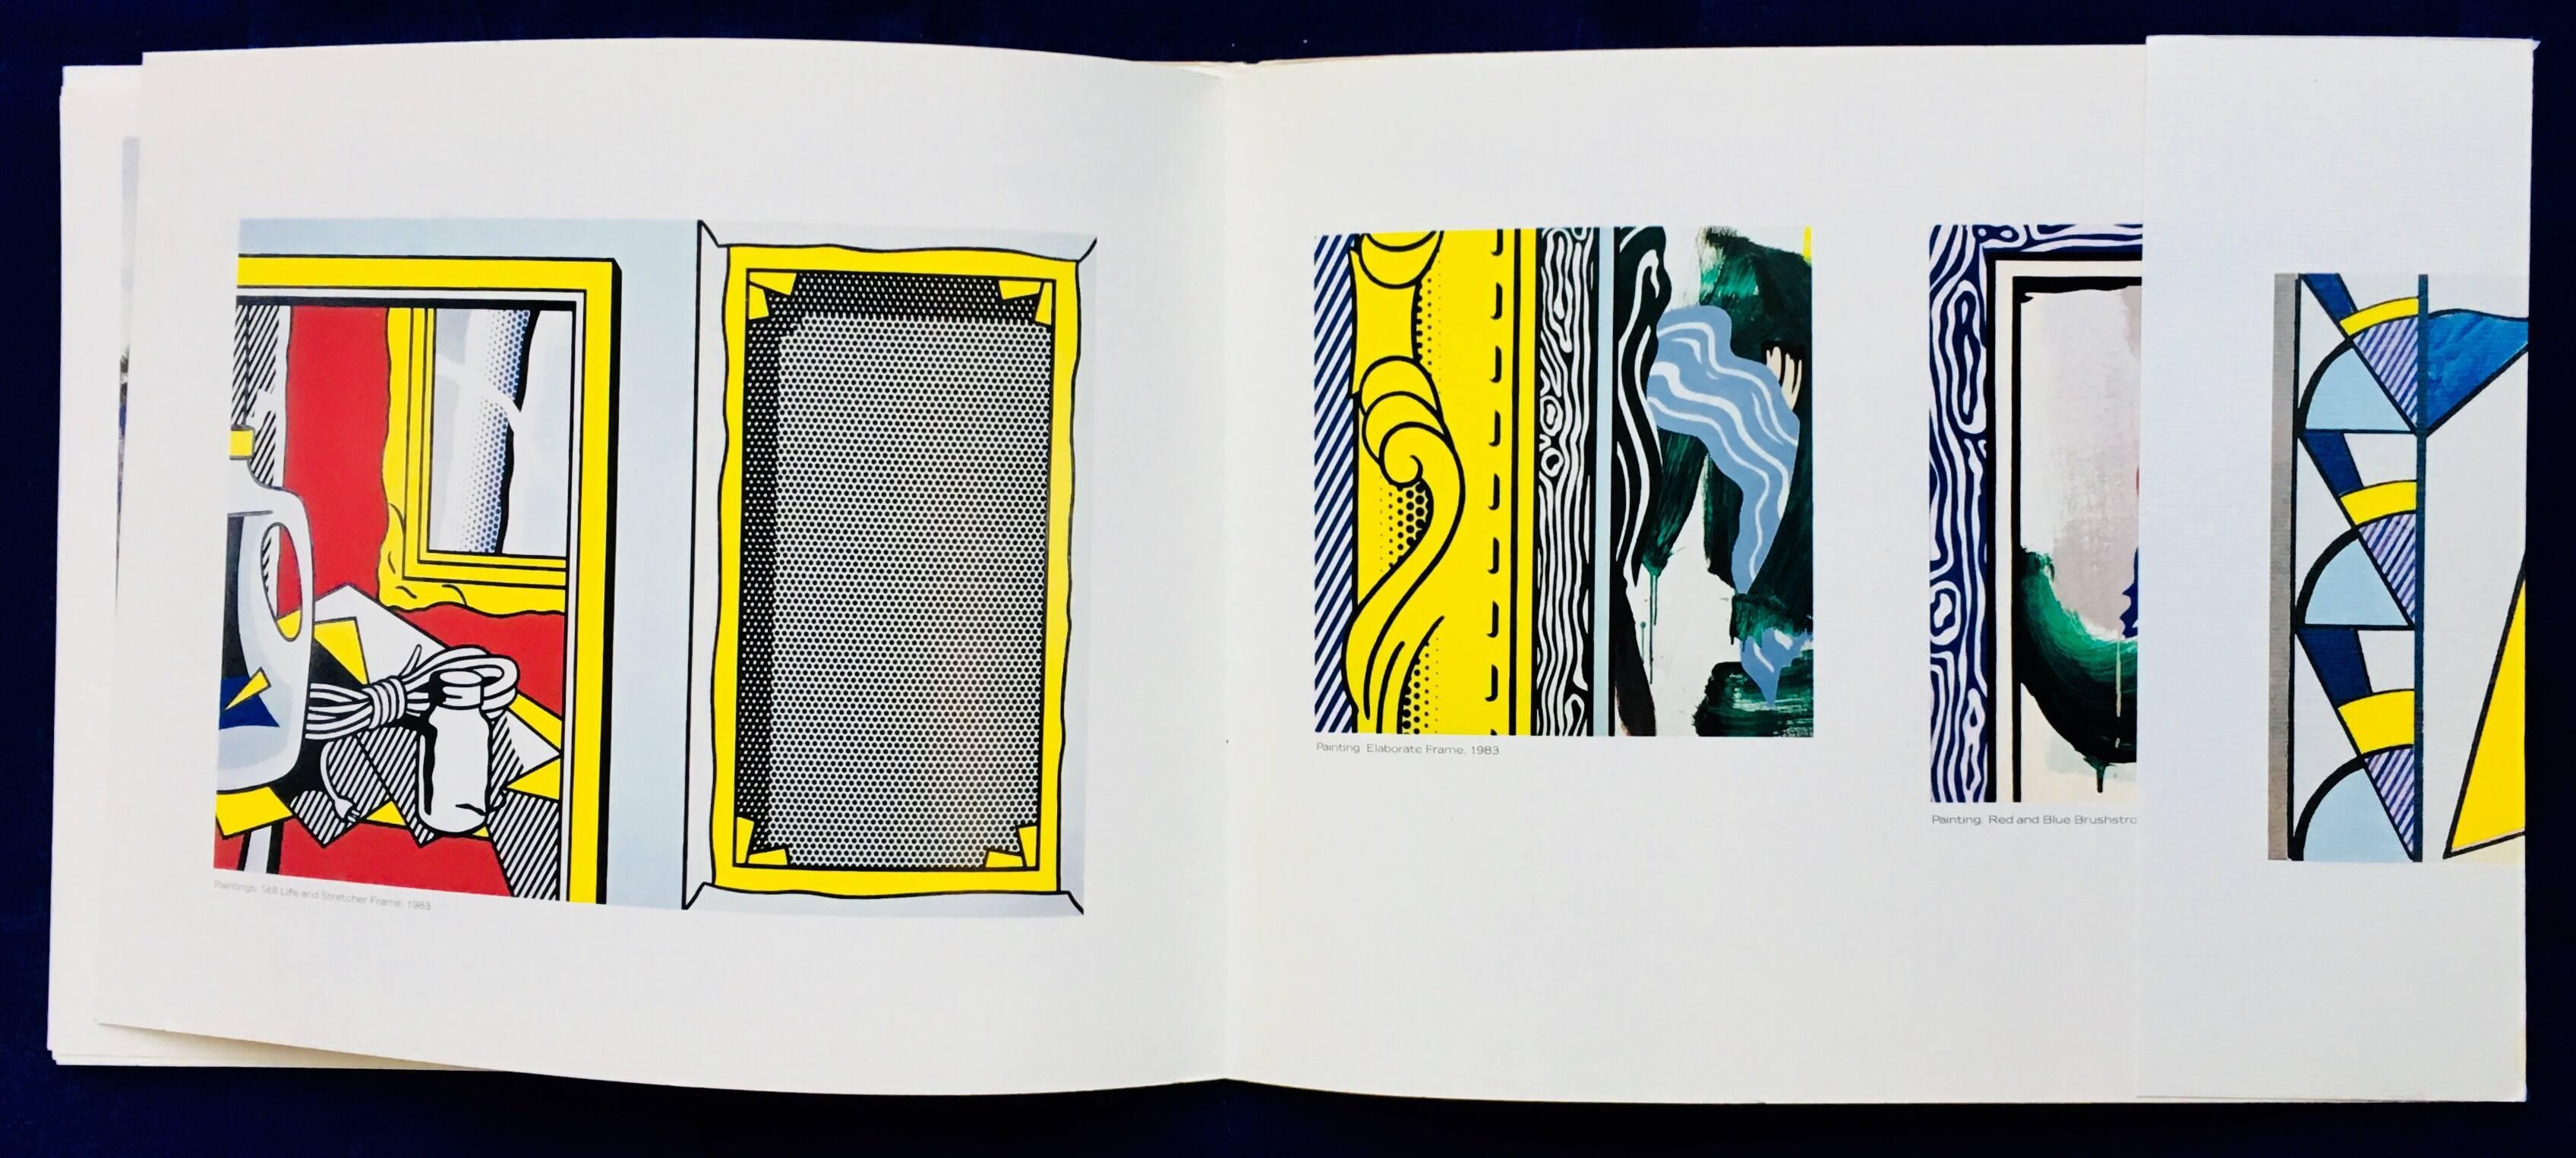 Roy Lichtenstein at Leo Castelli Gallery 1984 'Exhibition Catalog' 2